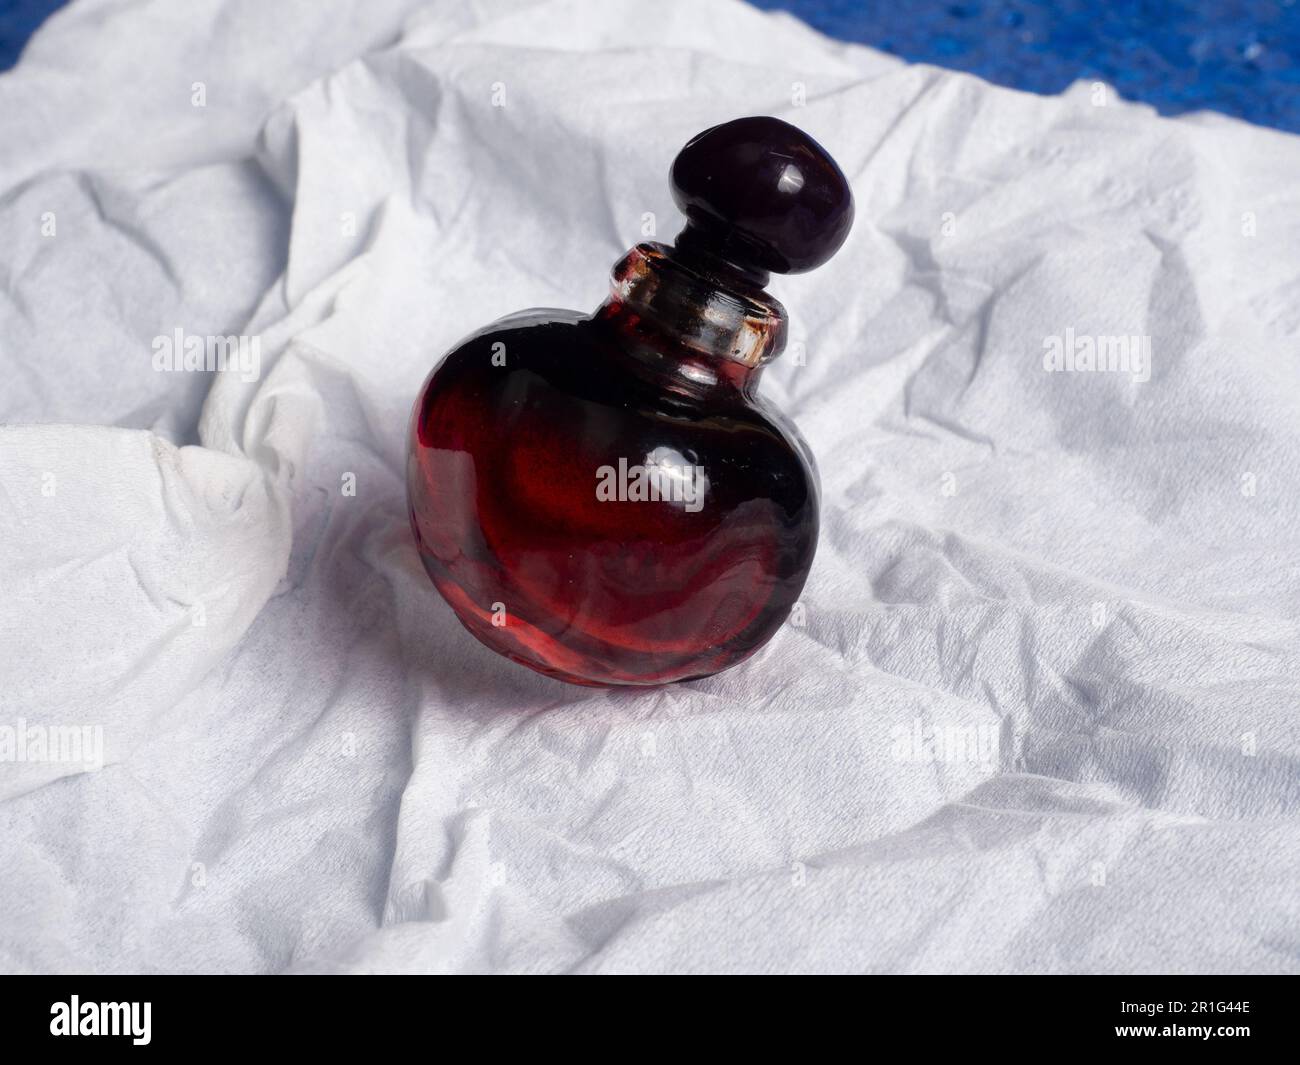 Photo d'une belle bouteille de parfum en forme de cerise sur un tissu blanc Banque D'Images